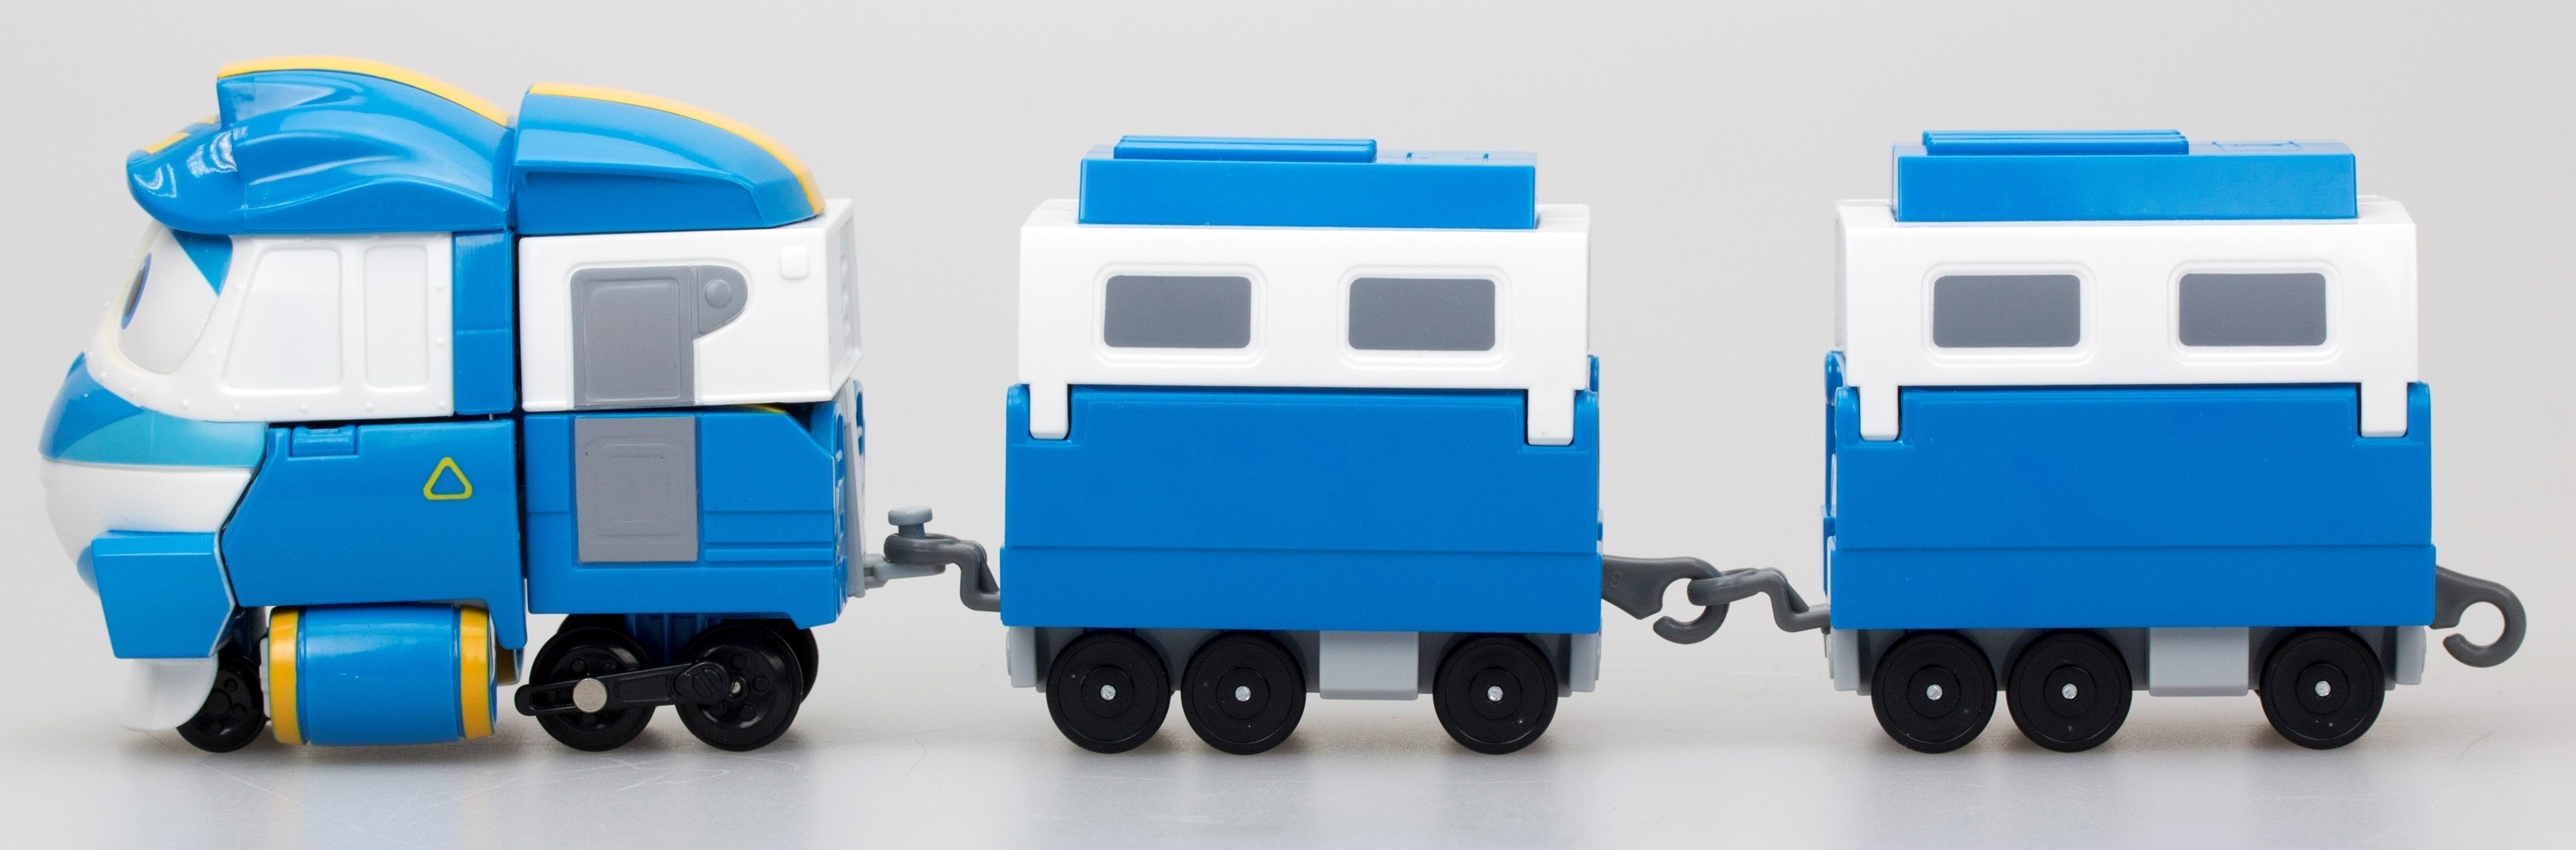 Паровоз-трансформер Silverlit Robot Trains Кей, с двумя вагонами (80177) - фото 4